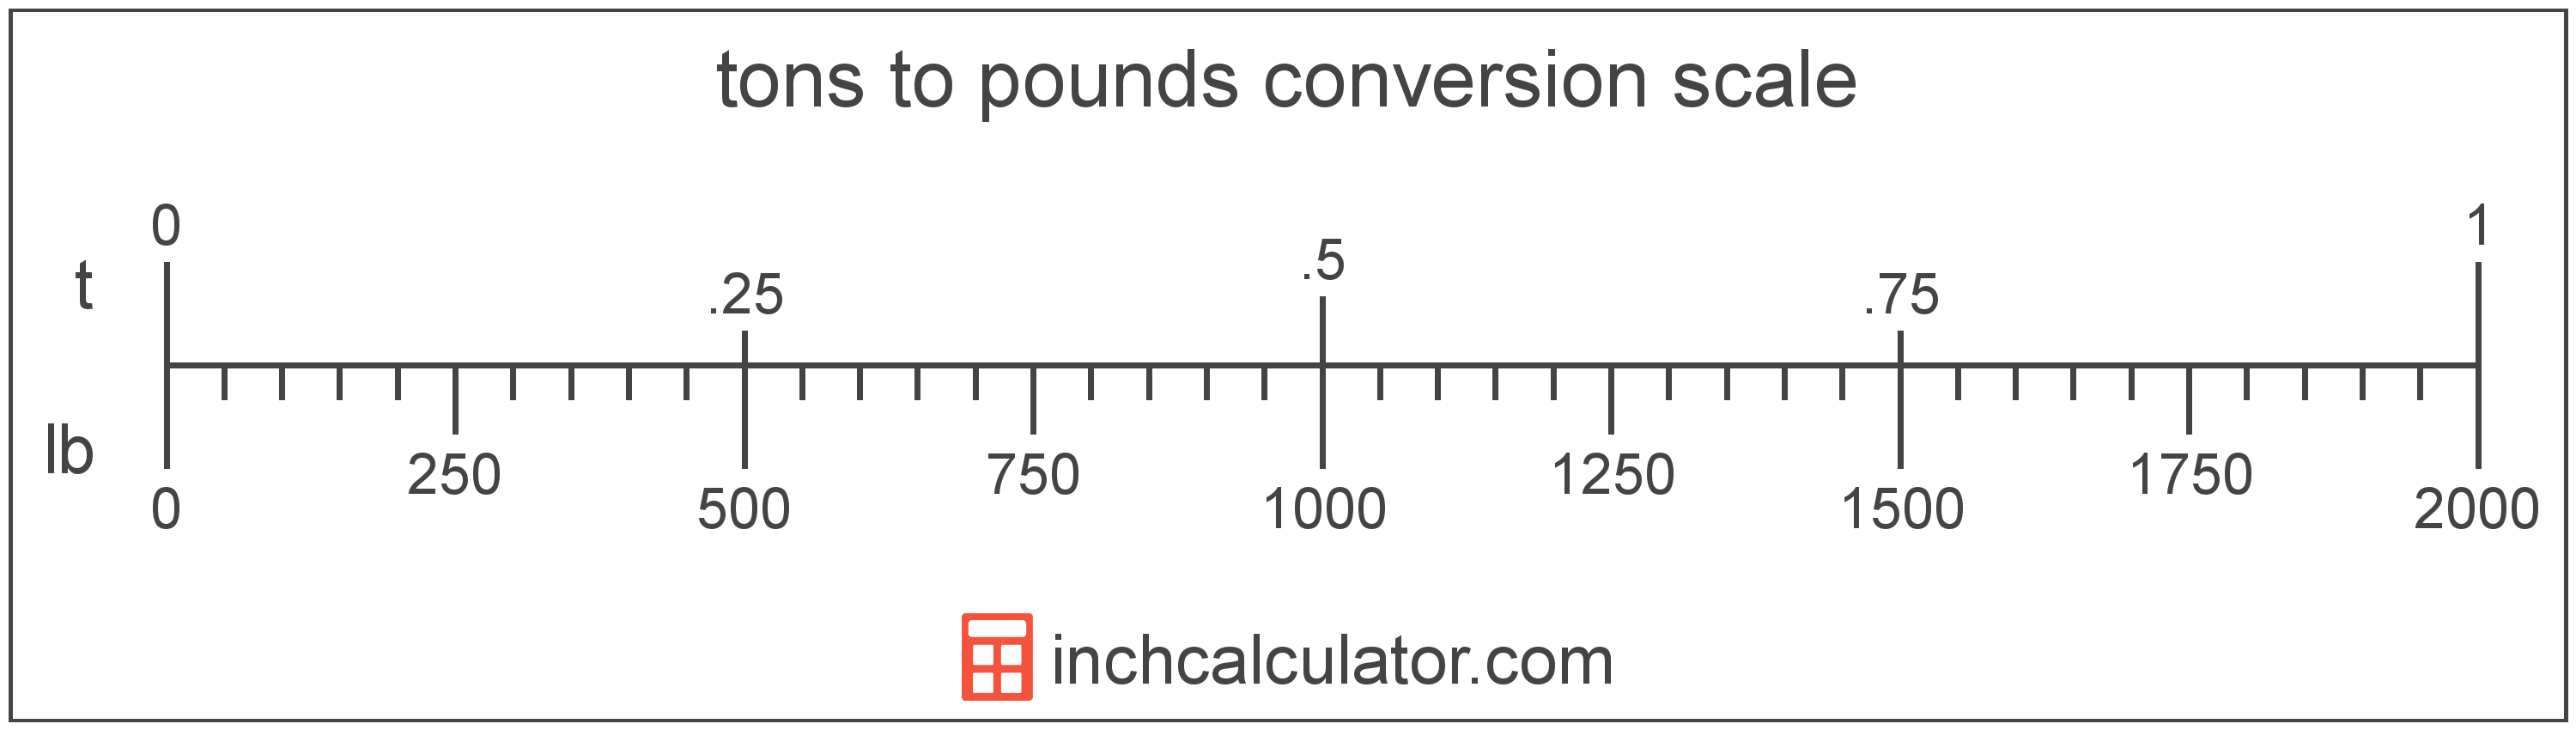 Kilograms To Pounds Conversion Chart